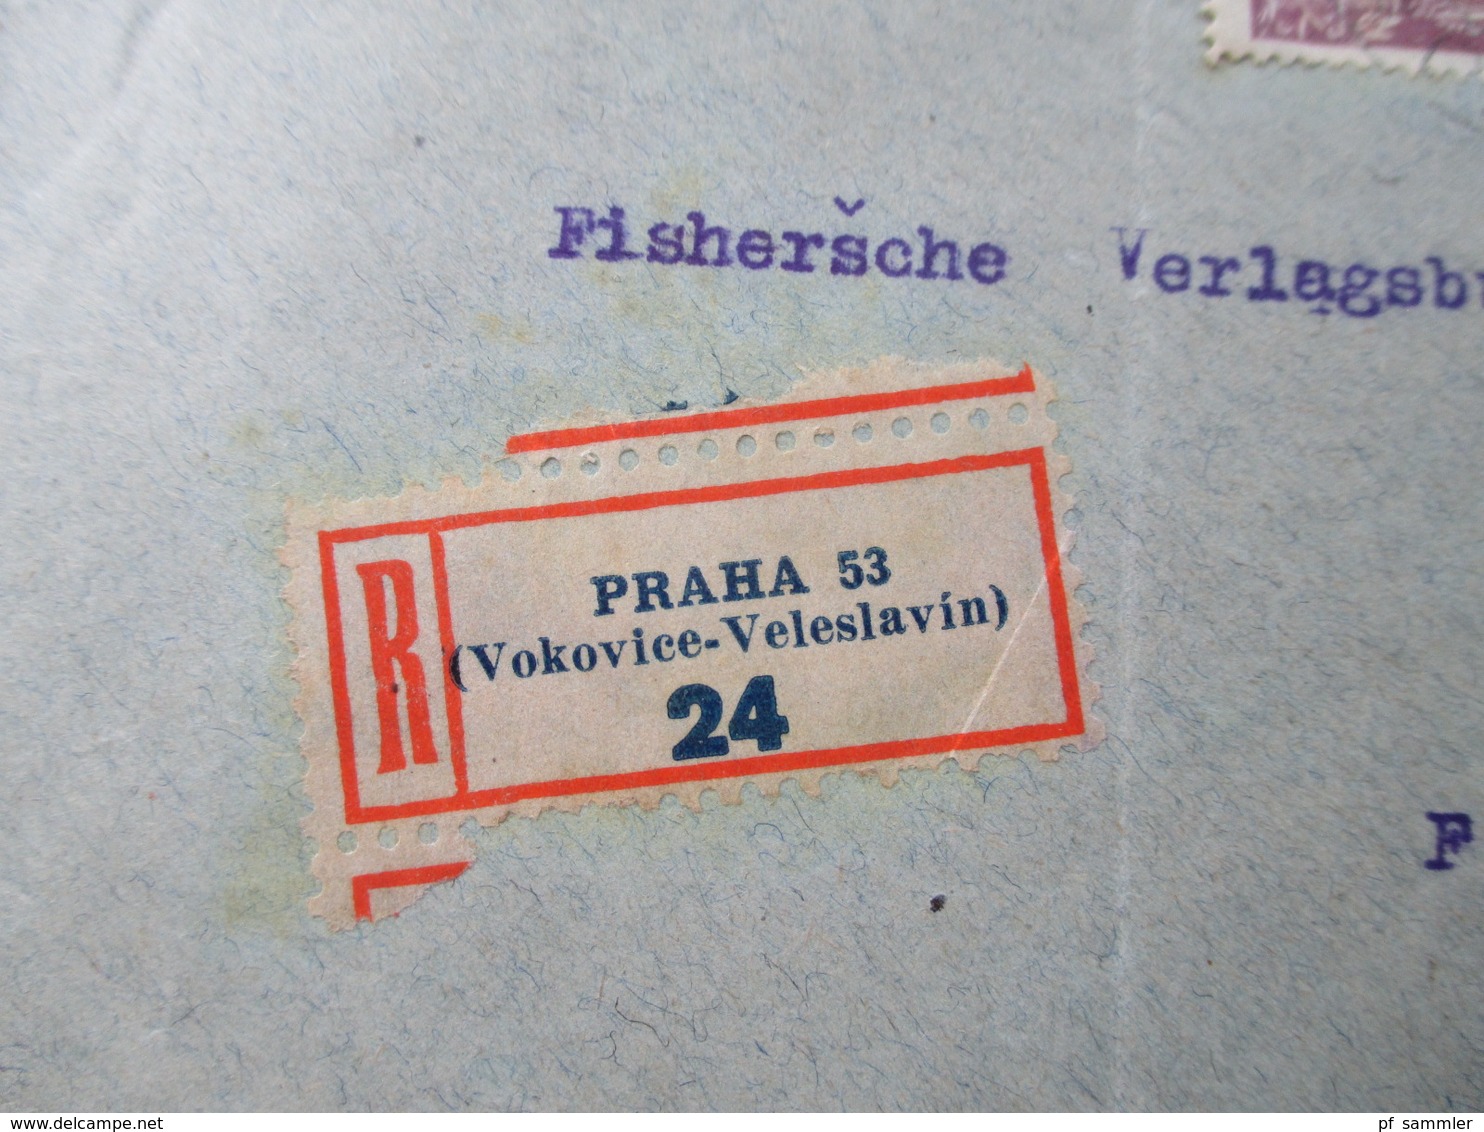 Tschechoslowakei Belegeposten 1920er Jahre. R-Briefe / Express usw. 21 Stück. Sehr interessant!Firmenkorrespondenz